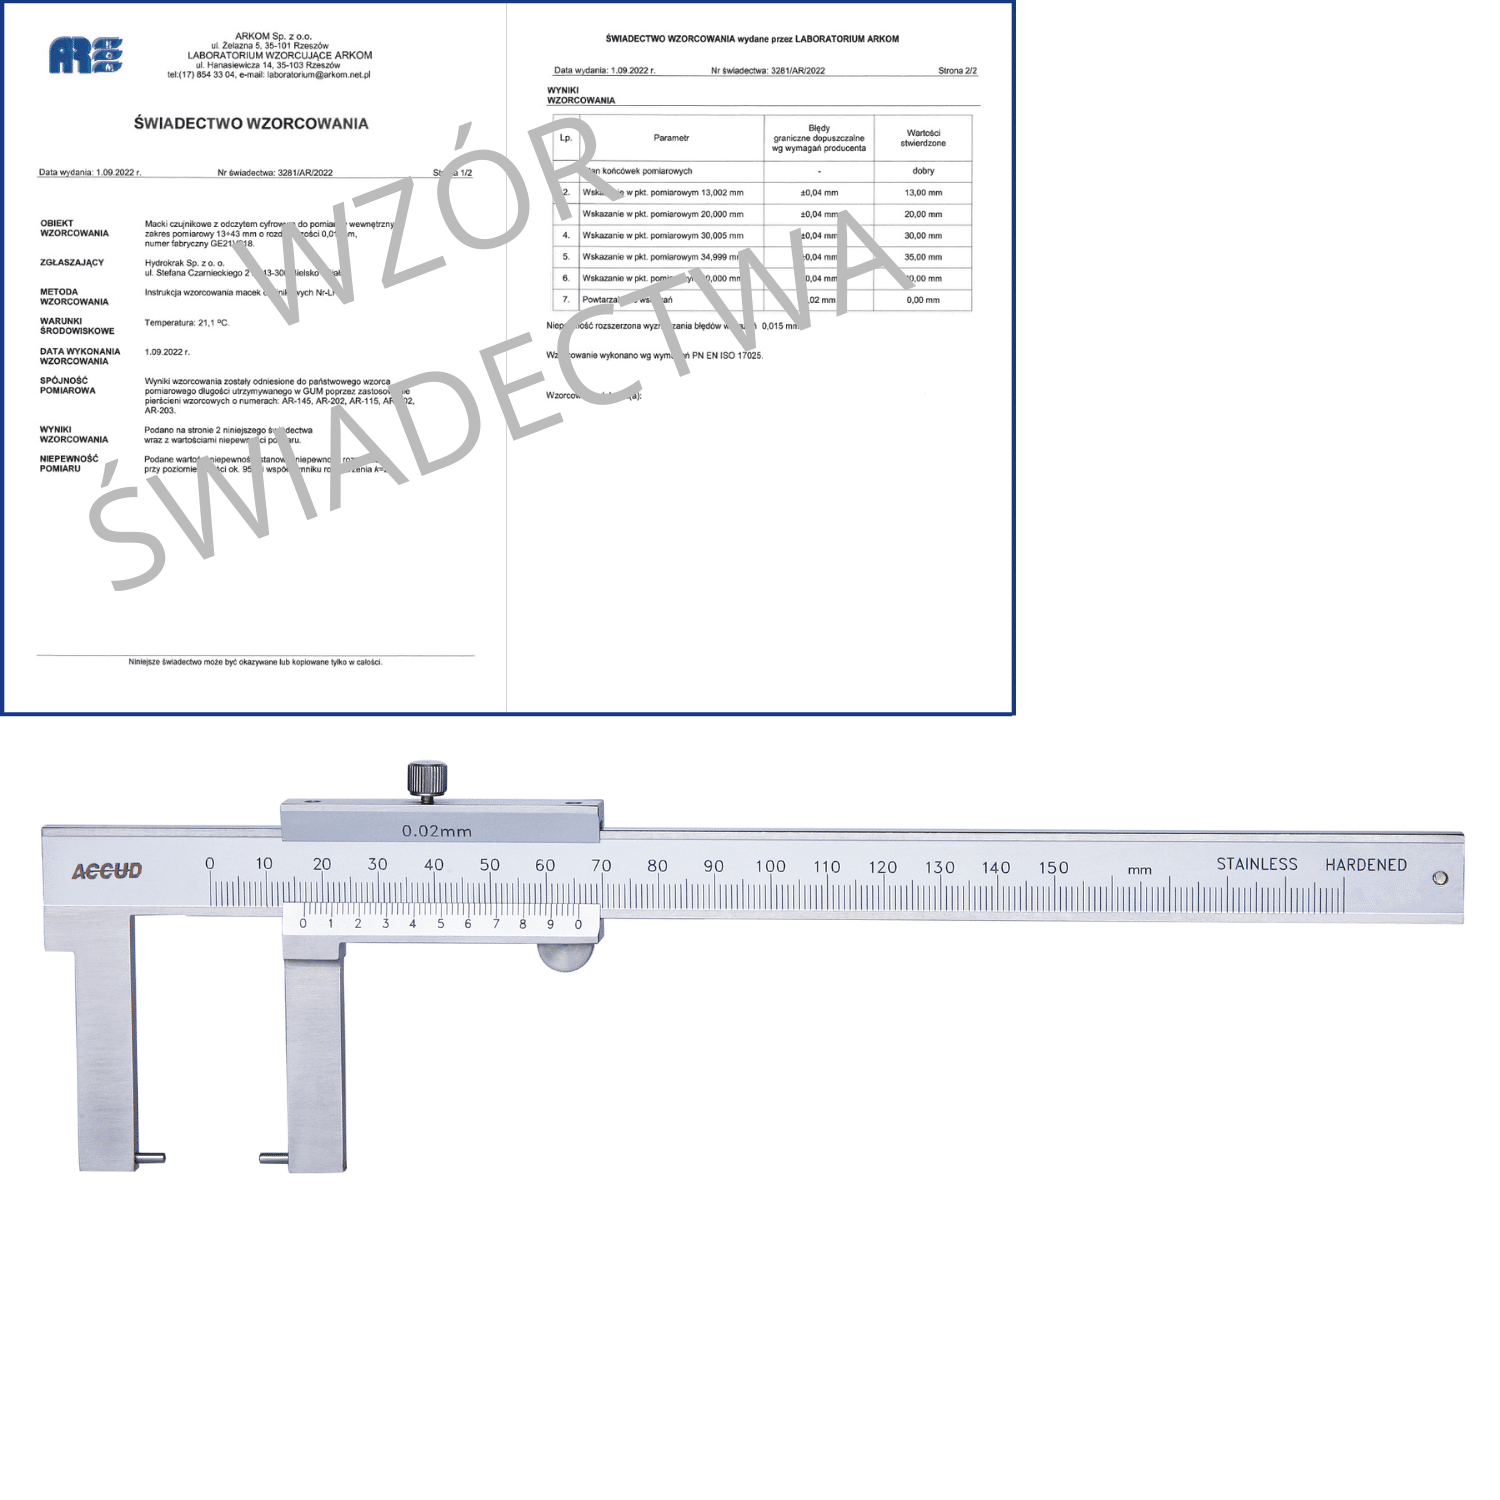 ACCUD suwmiarka analogowa 150/0.02 mm do pomiarów zewnętrznych + świadectwo wzorcowania 144-006-11 WZORC (Zdjęcie 1)